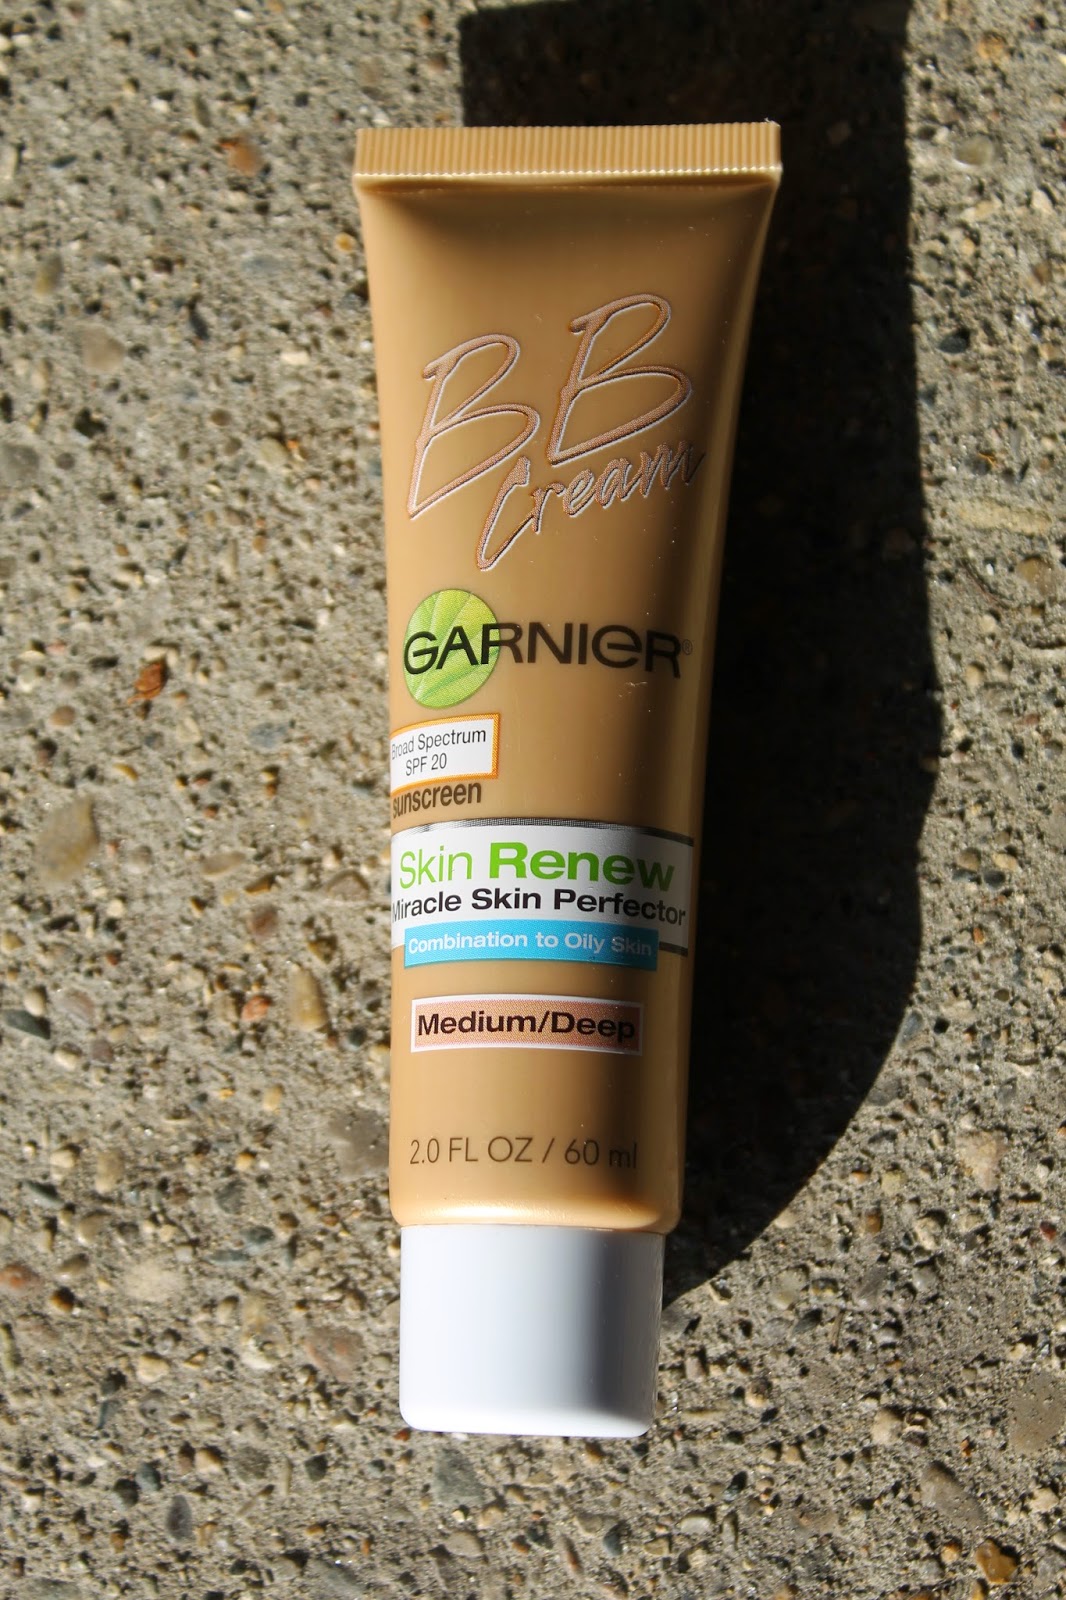 The Passenger Element Garnier Skin Renew BB Cream in 